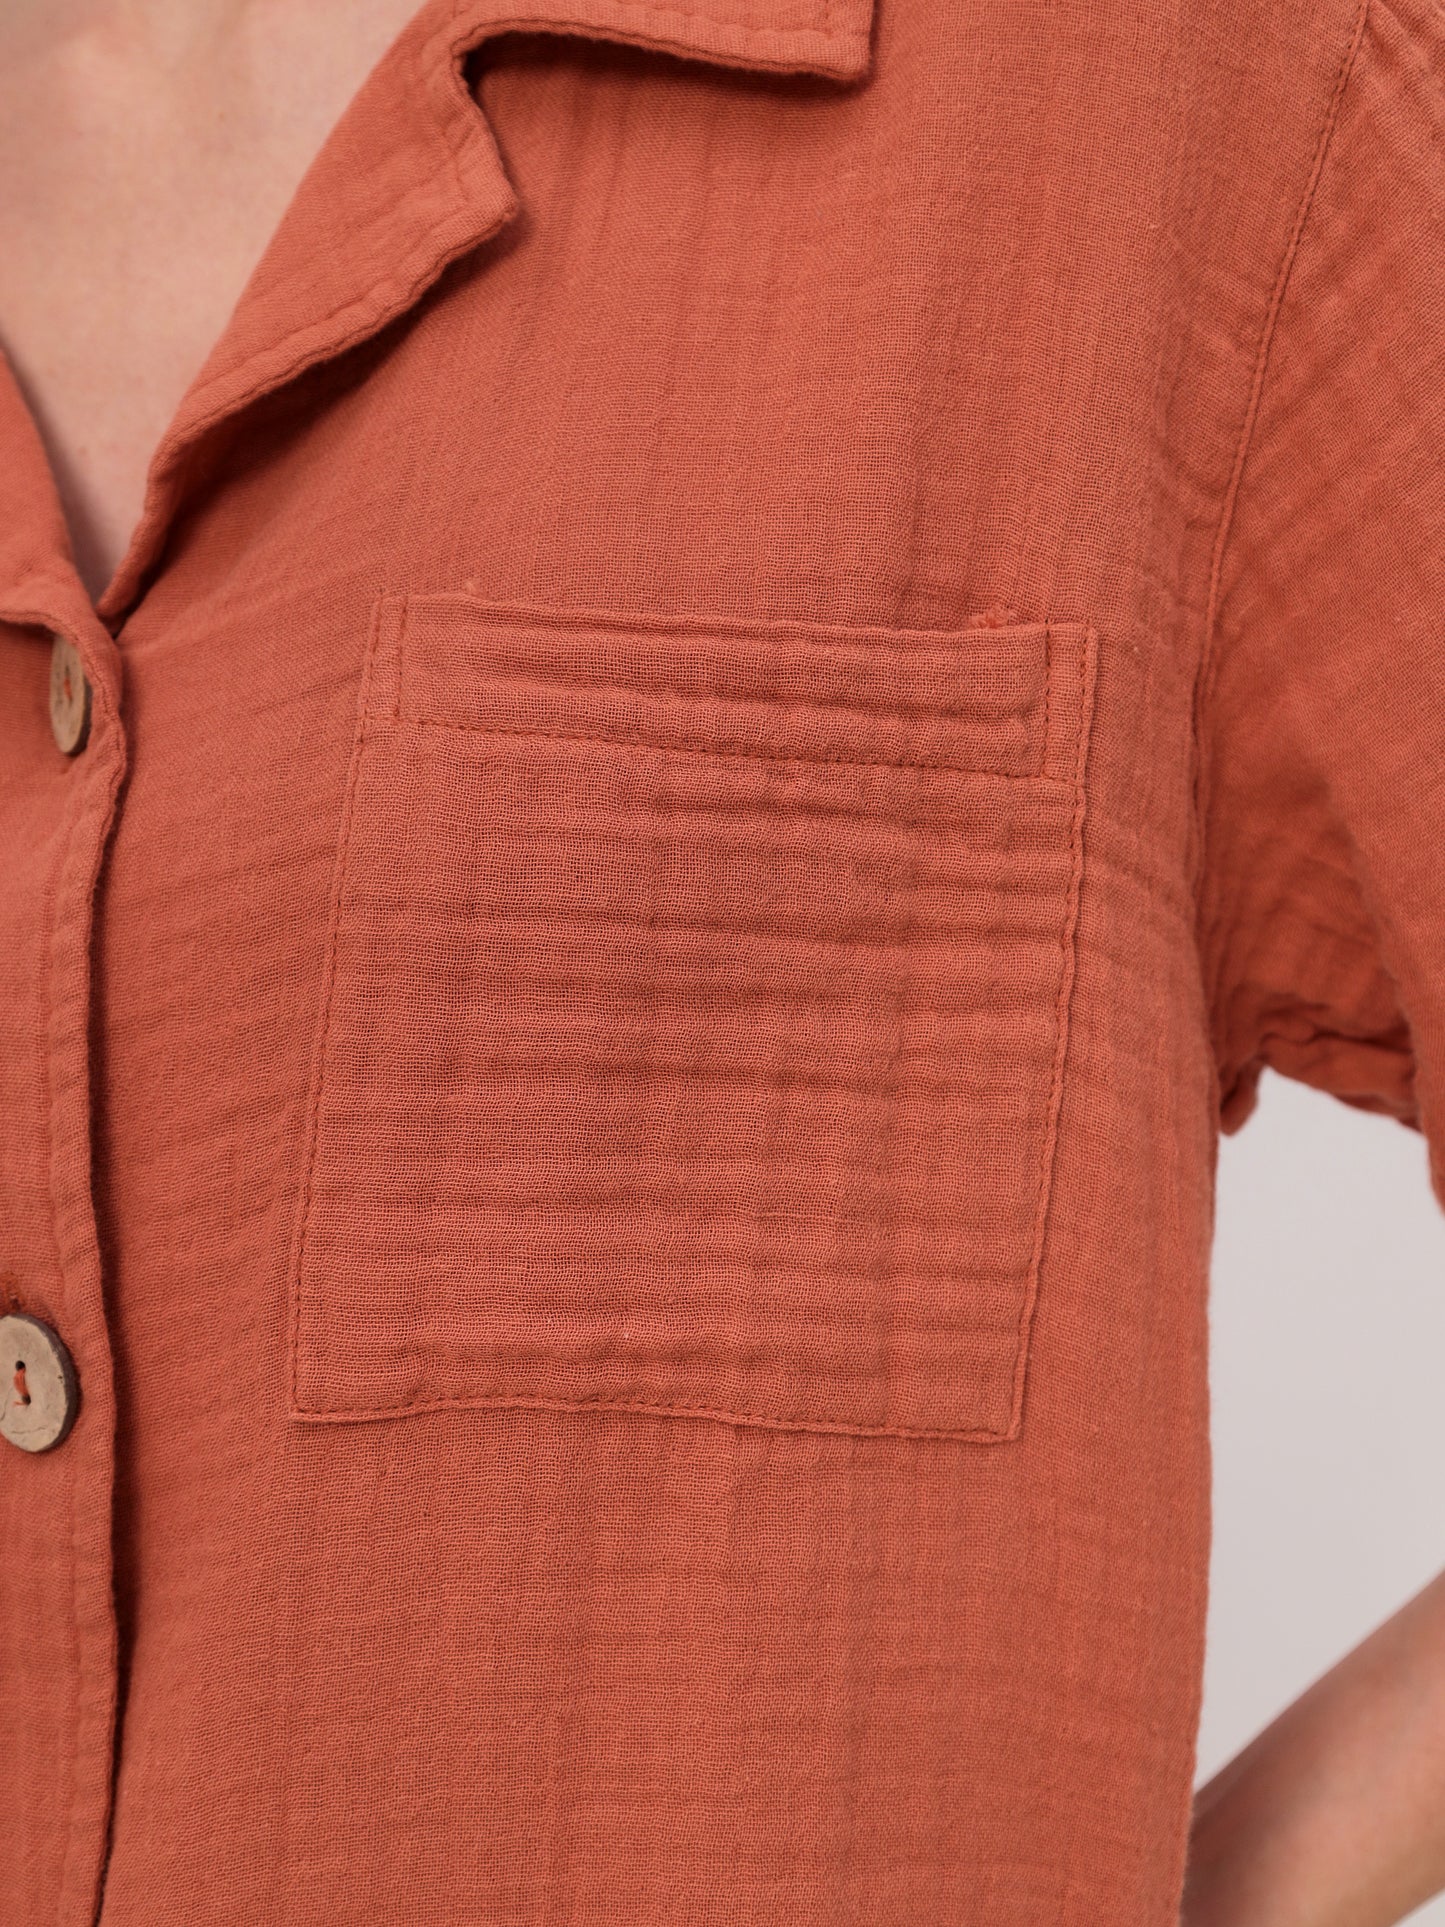 2teilige Damen Sommer Mode T-Shirt und Short Hosen Set aus lässige Musselin mit Kordelzug Freizeit Shorts LMS-6216 Burnt Brick